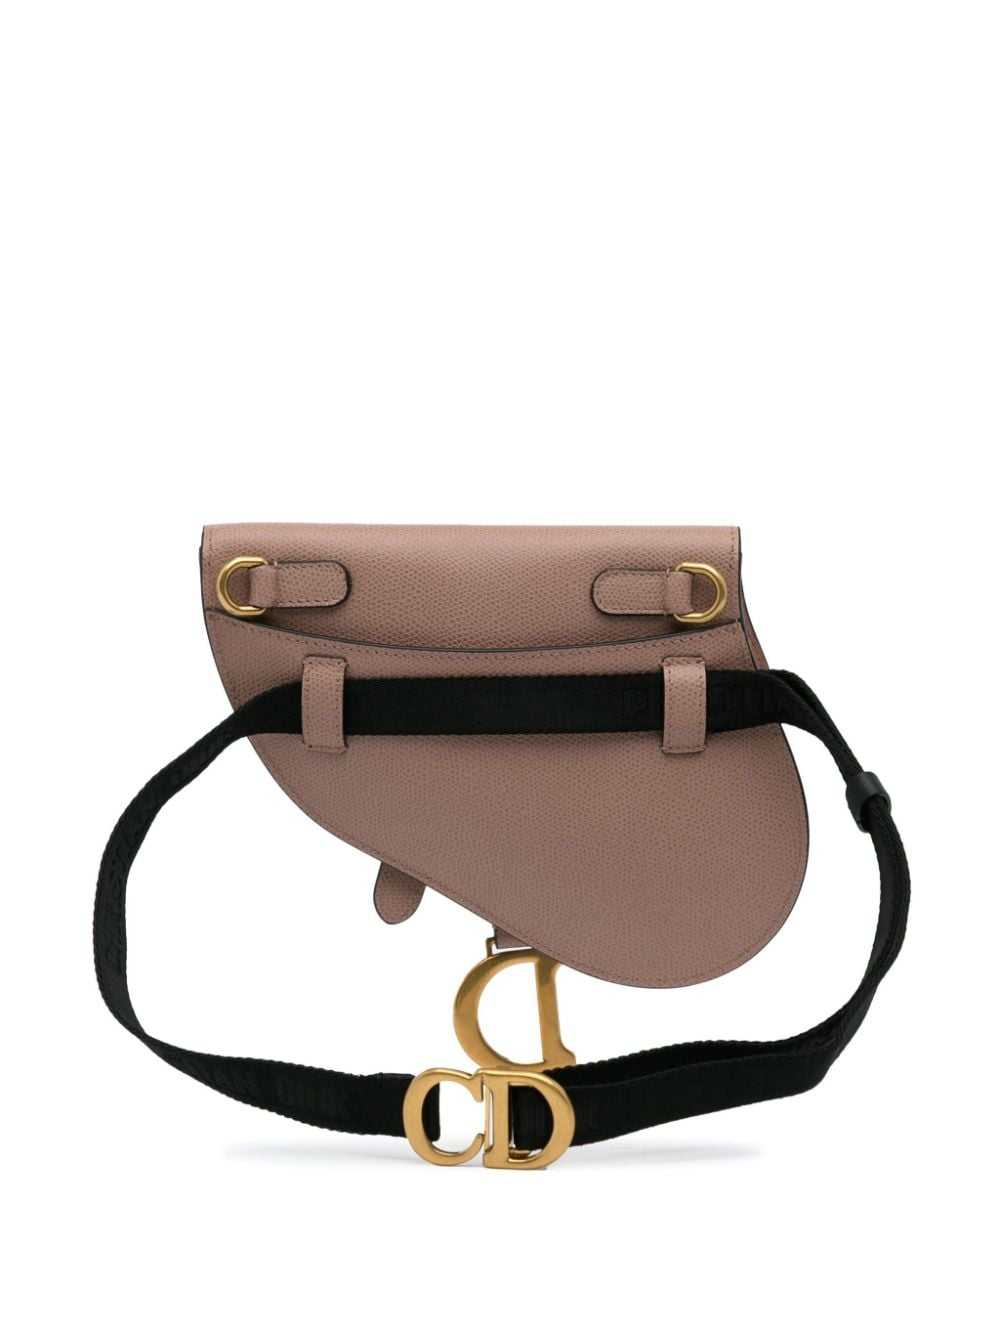 Christian Dior Pre-Owned 2019 Saddle belt bag - B… - image 2